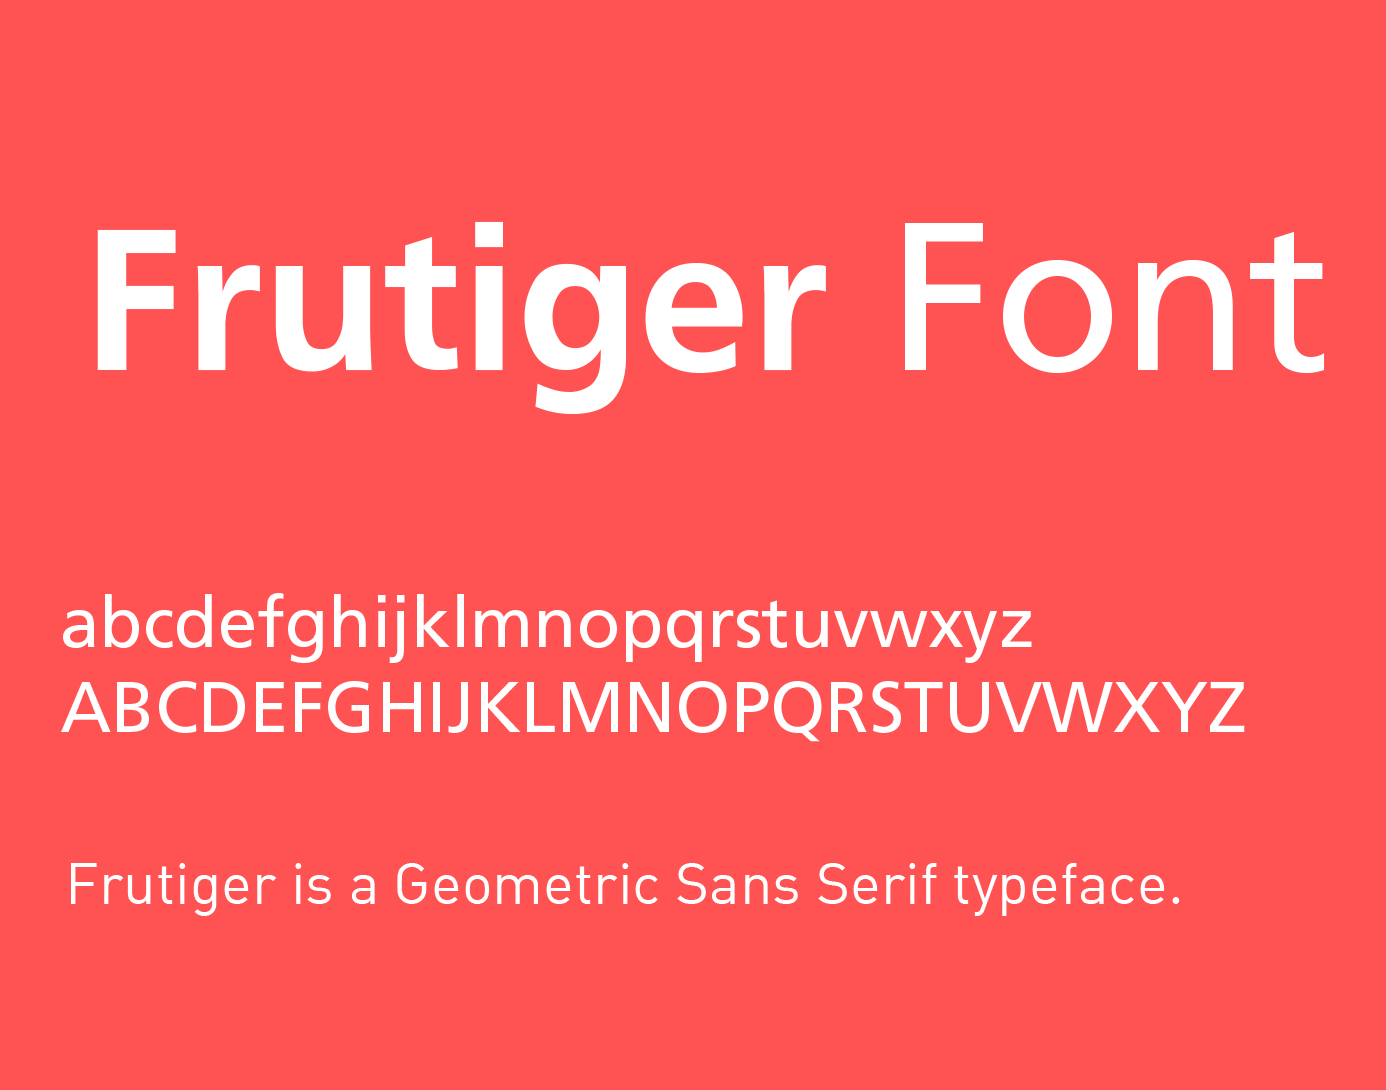 frutiger font free download